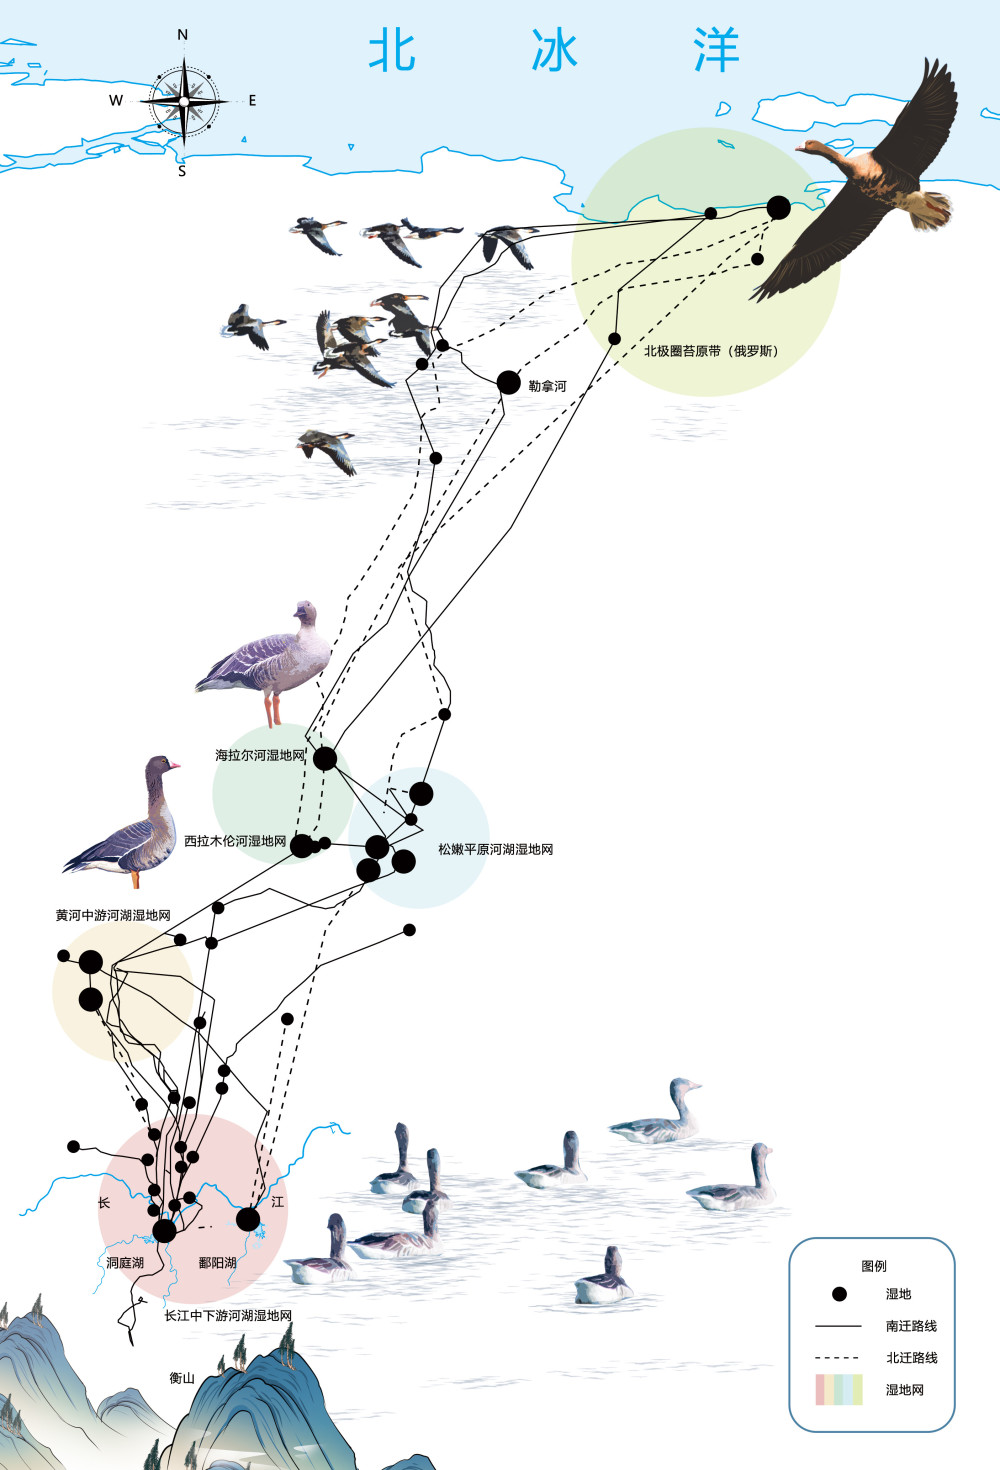 候鸟迁徙路线地图图片